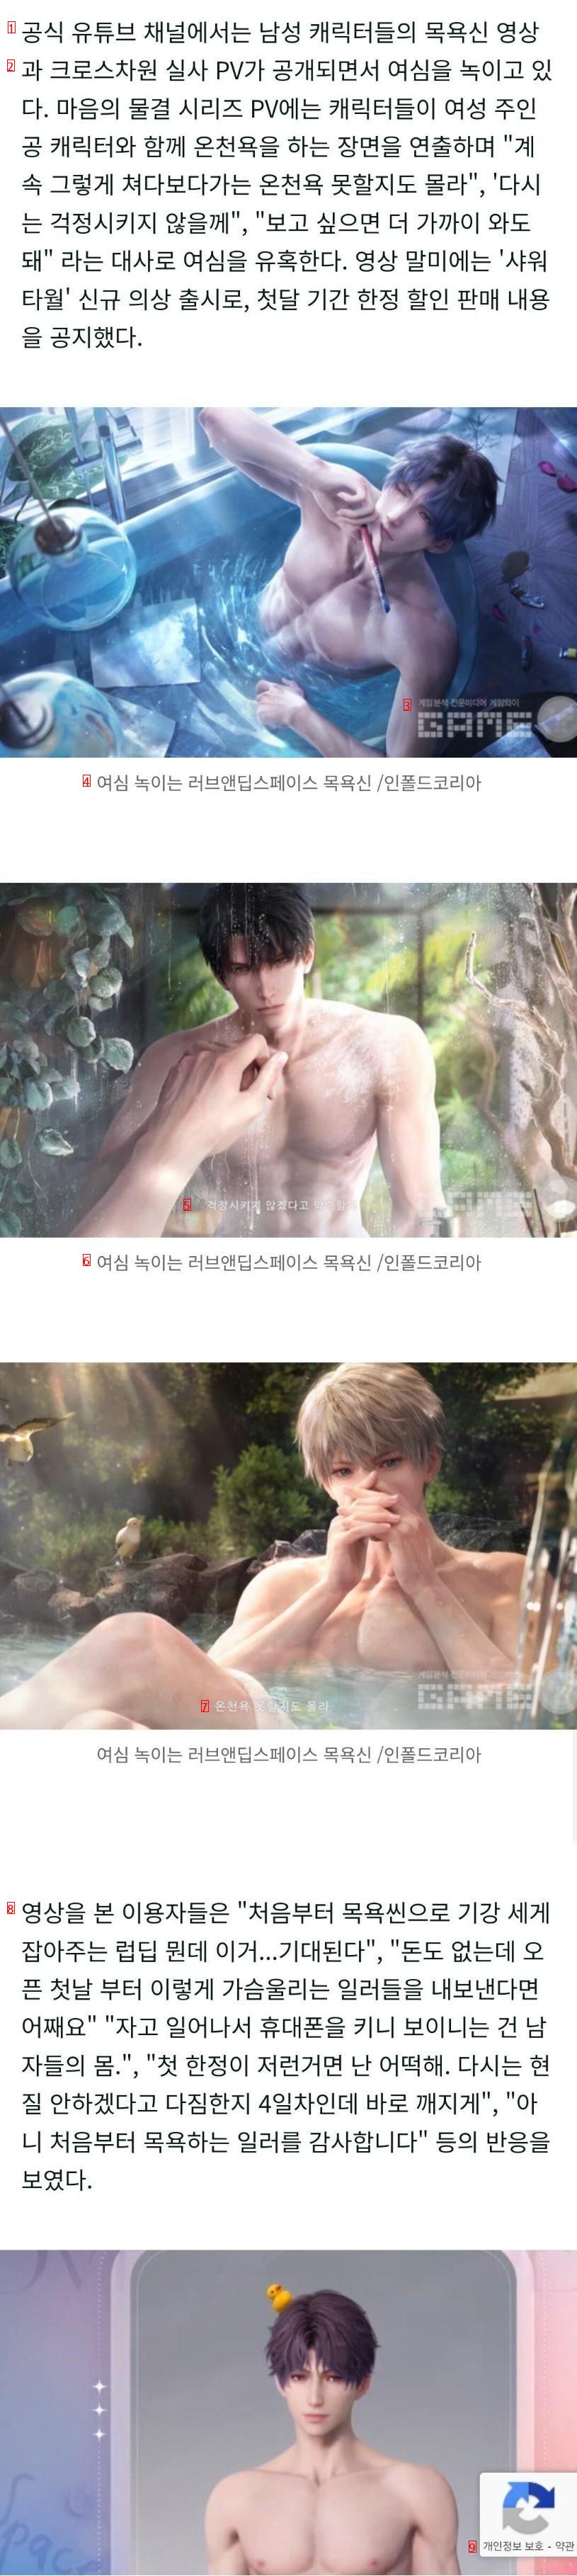 意外とキャラクターを脱がせて裸のお風呂のシーンを入れられる韓国ゲームの近況